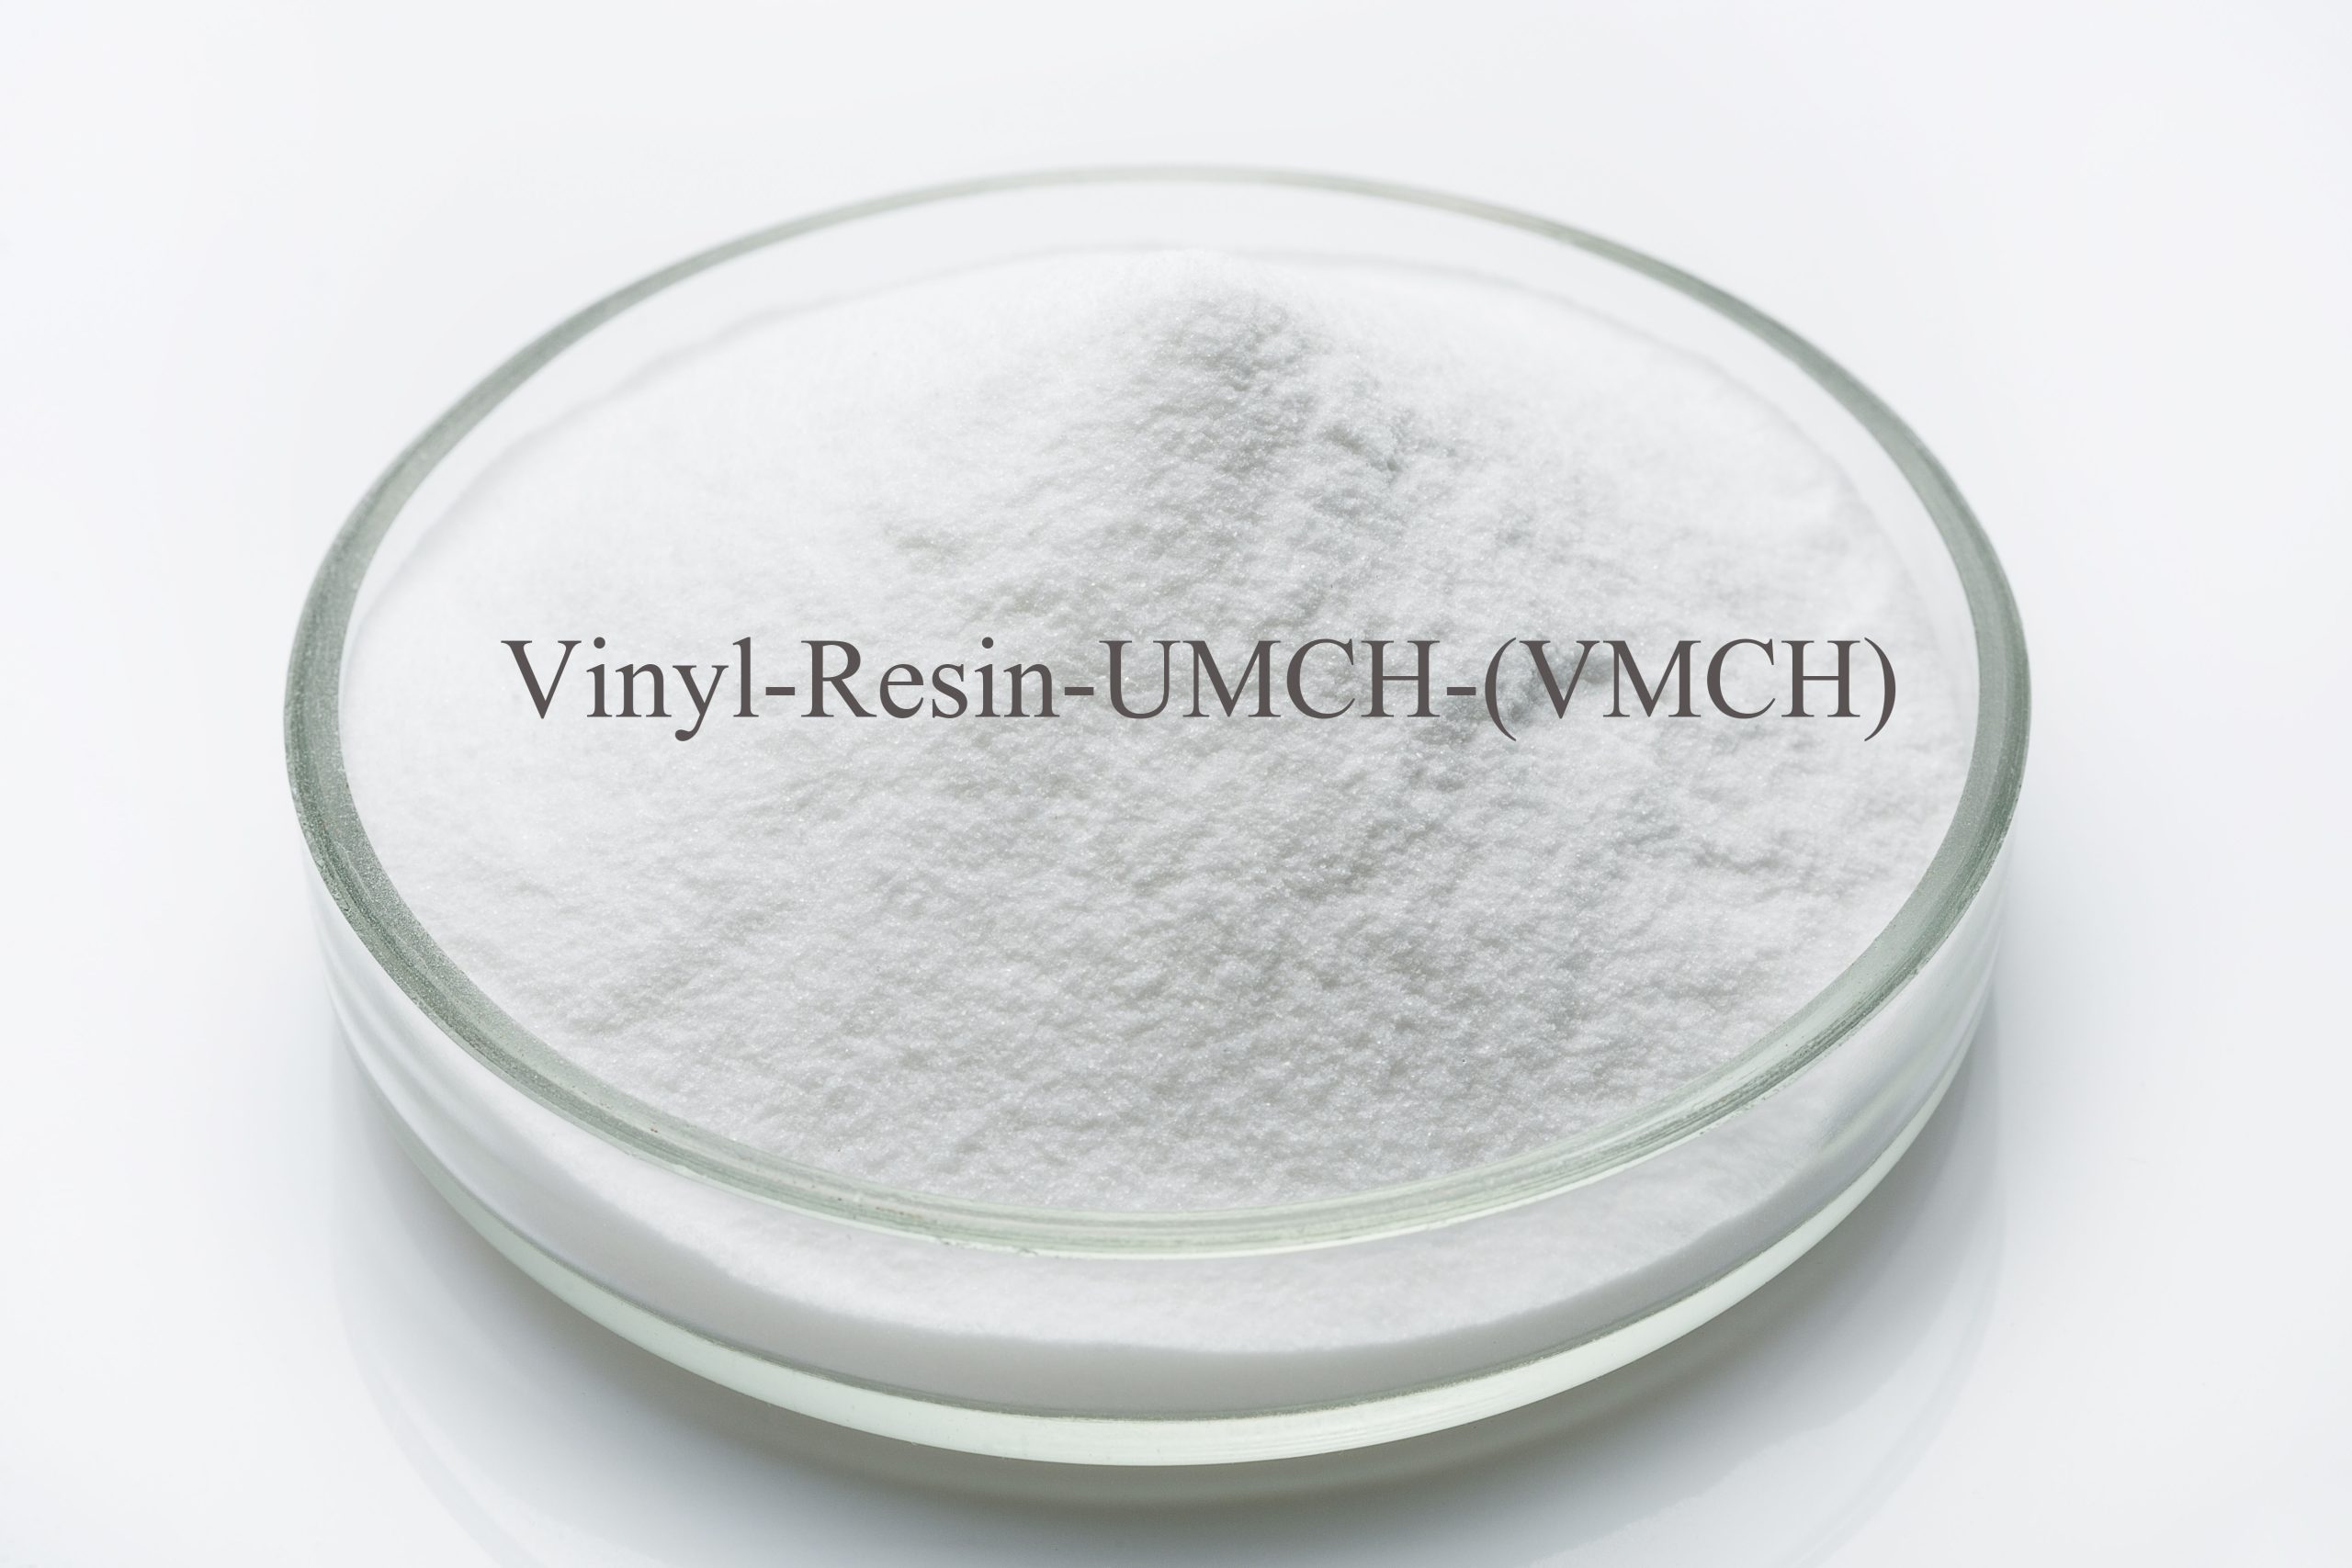 Vinyl-Resin-UMCH-(VMCH)